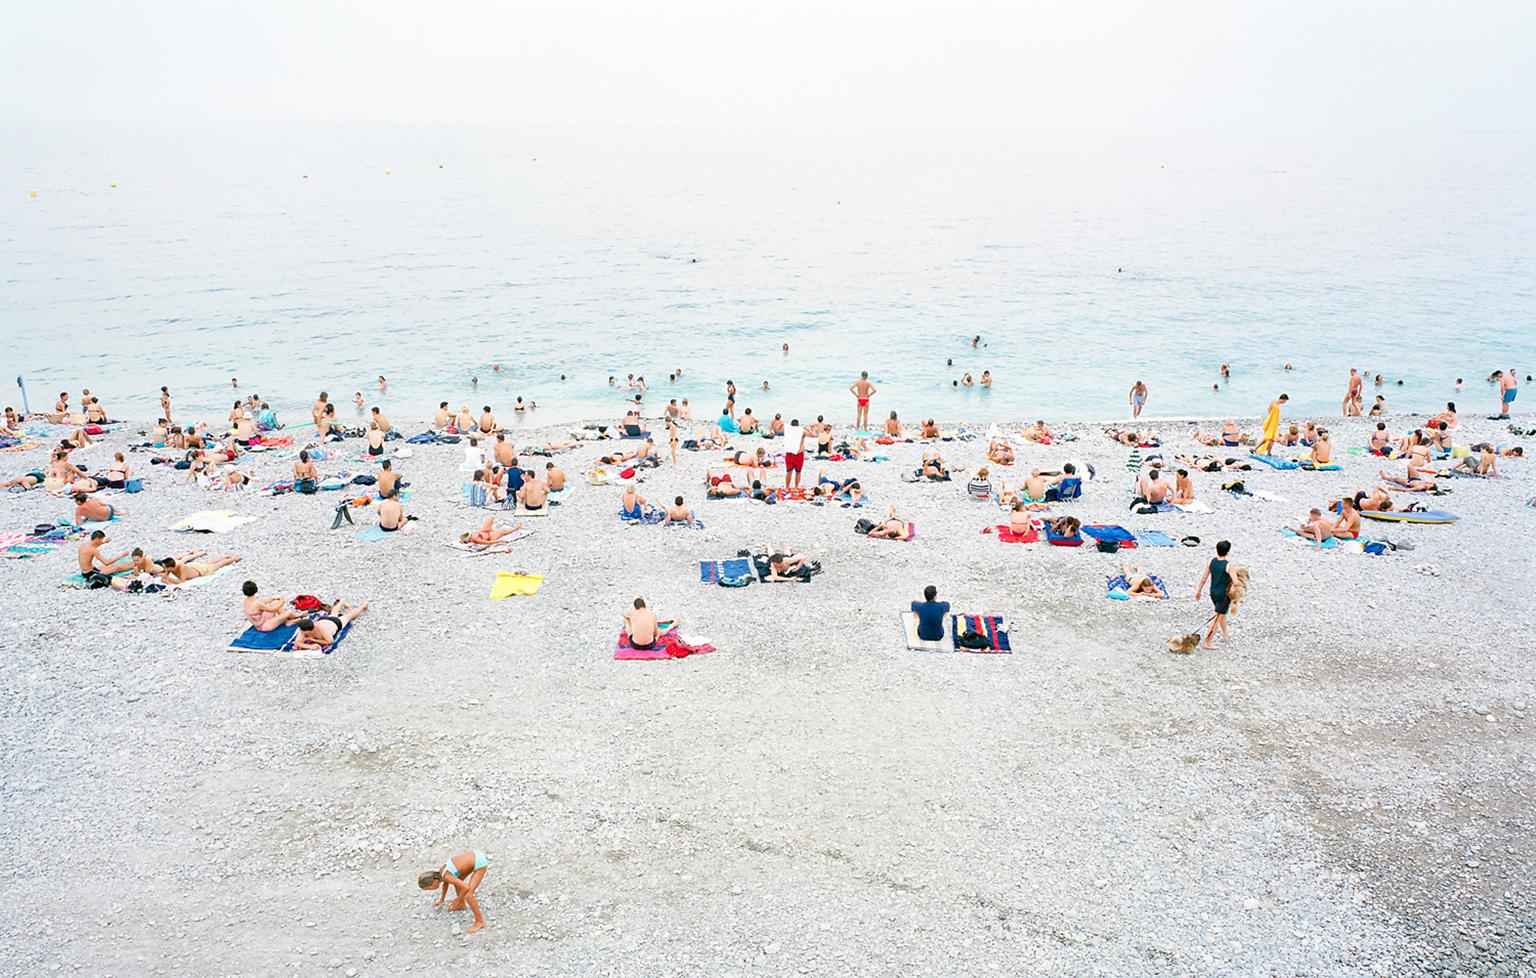 Frank Schott Landscape Photograph – Nizza - Großformatiges Foto der Sommerstrandszene in Südfrankreich